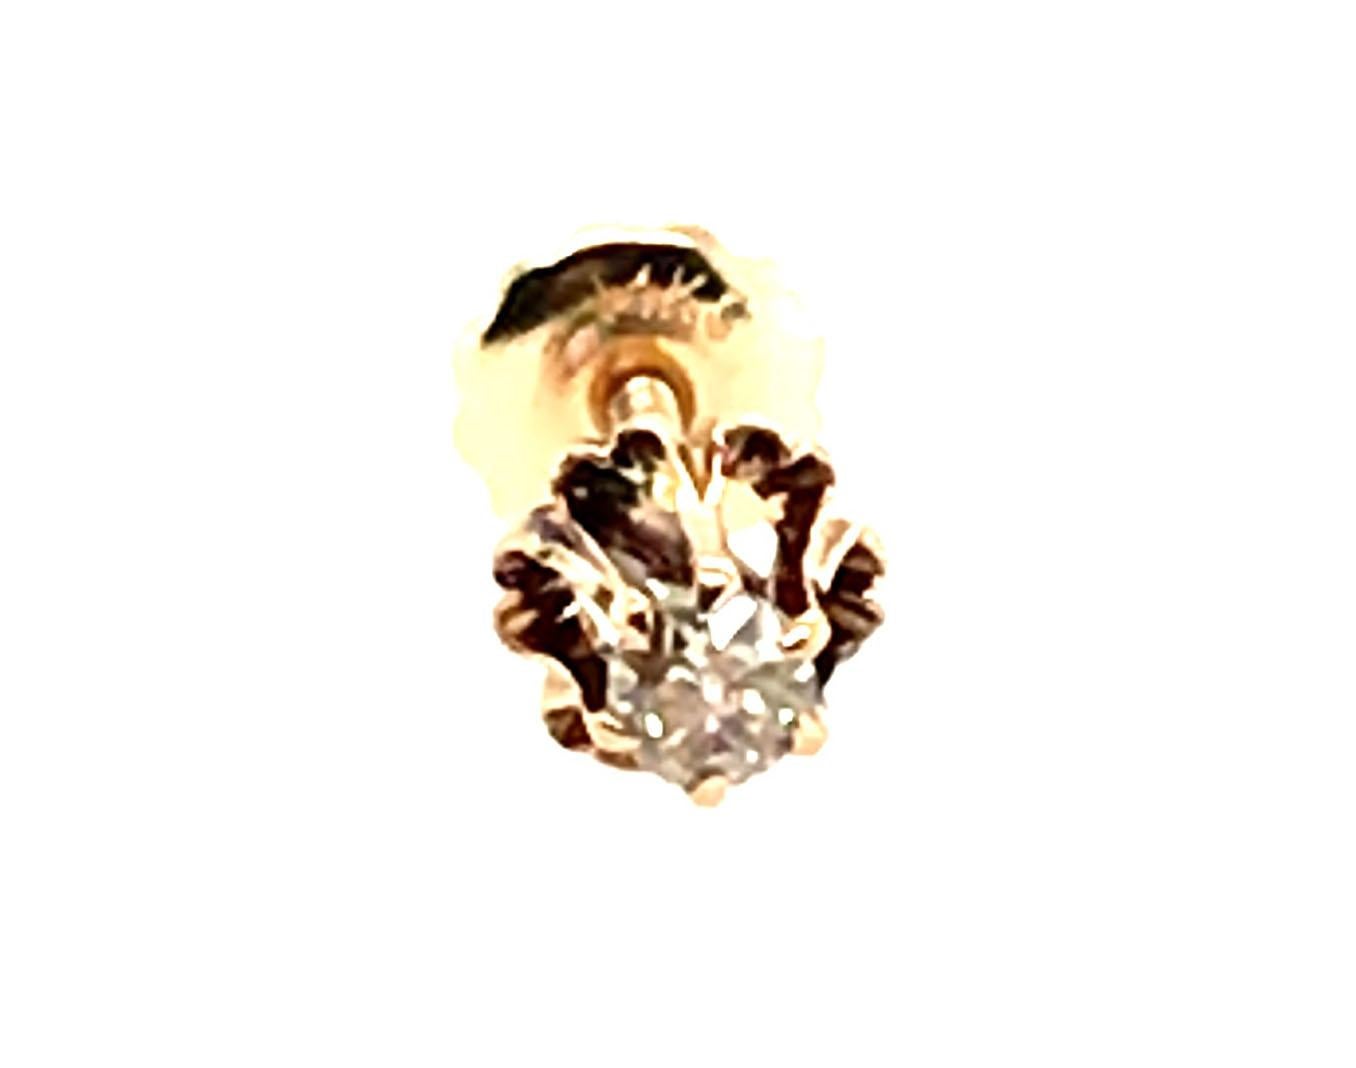 Echtes Original Antik aus 1880's Victorian Single Diamond Stud Earring .15ct Screwback 14K Gelbgold


Mit einem echten, natürlich abgebauten H/SI1 .15ct Old Mine Cut Diamanten 

Original Schraubrücken

Schöne Patina beweist sein Alter

100%